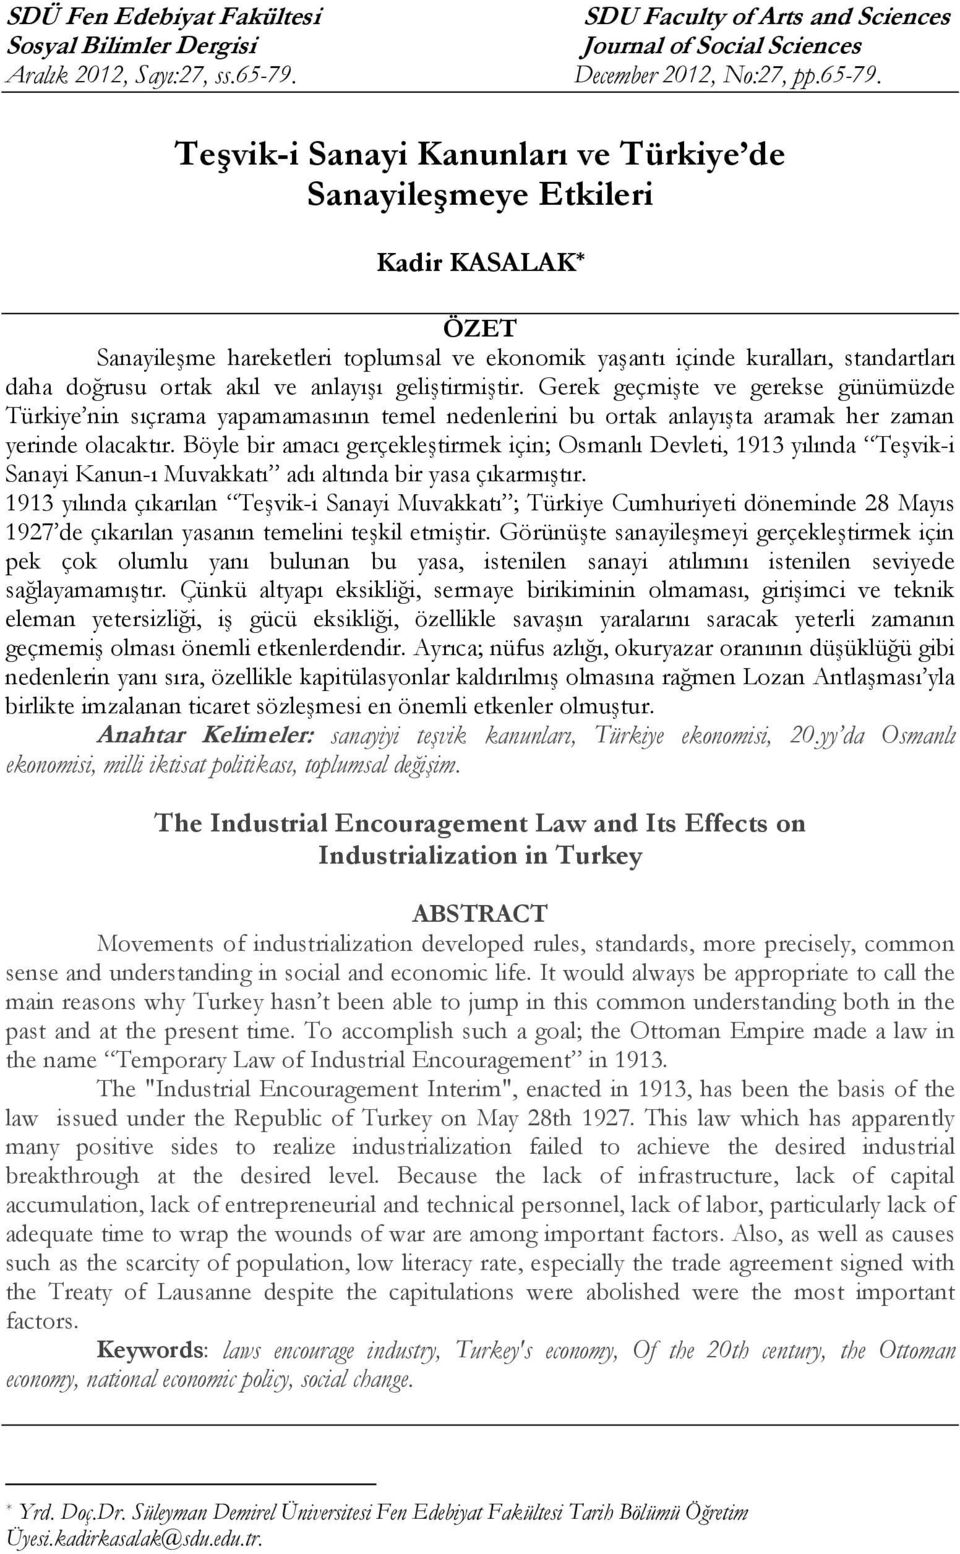 tesvik i sanayi kanunlari ve turkiye de sanayilesmeye etkileri pdf free download